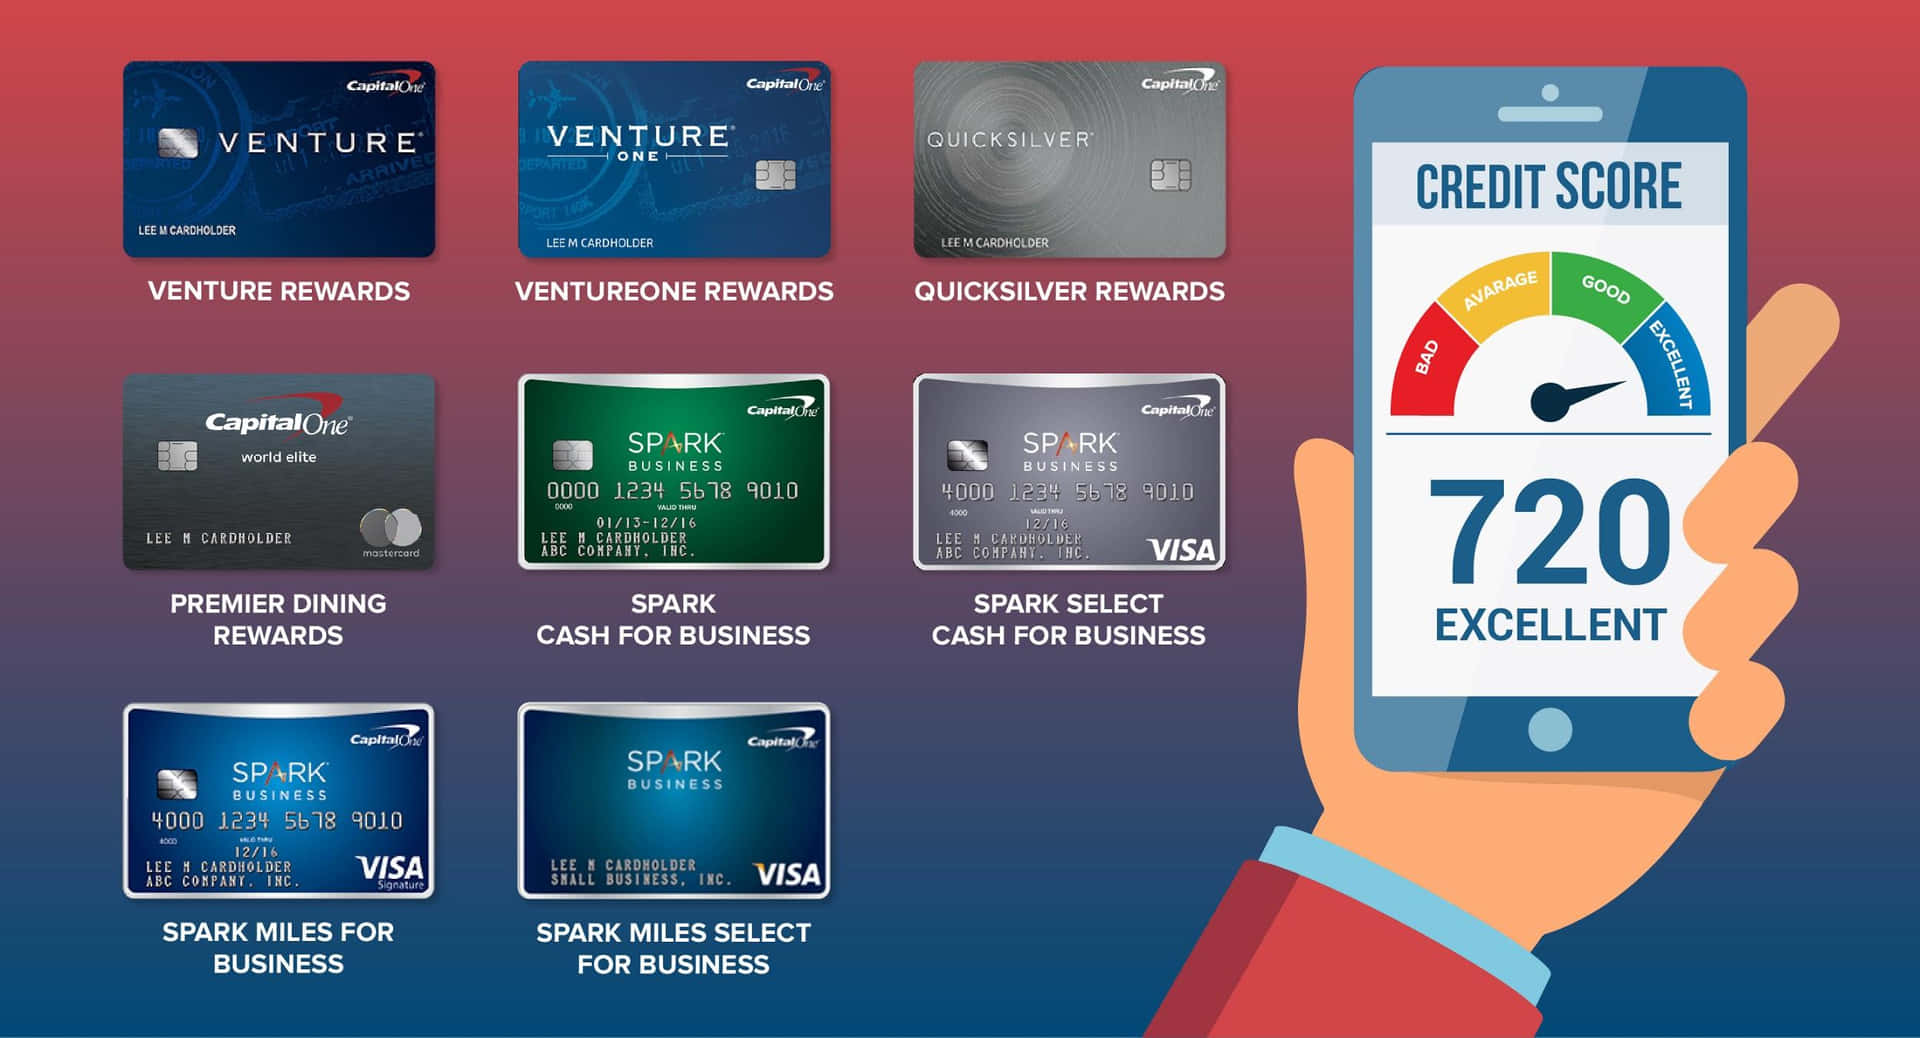 Shopping& Credit Card In Italian: Acquisti & Carta Di Credito